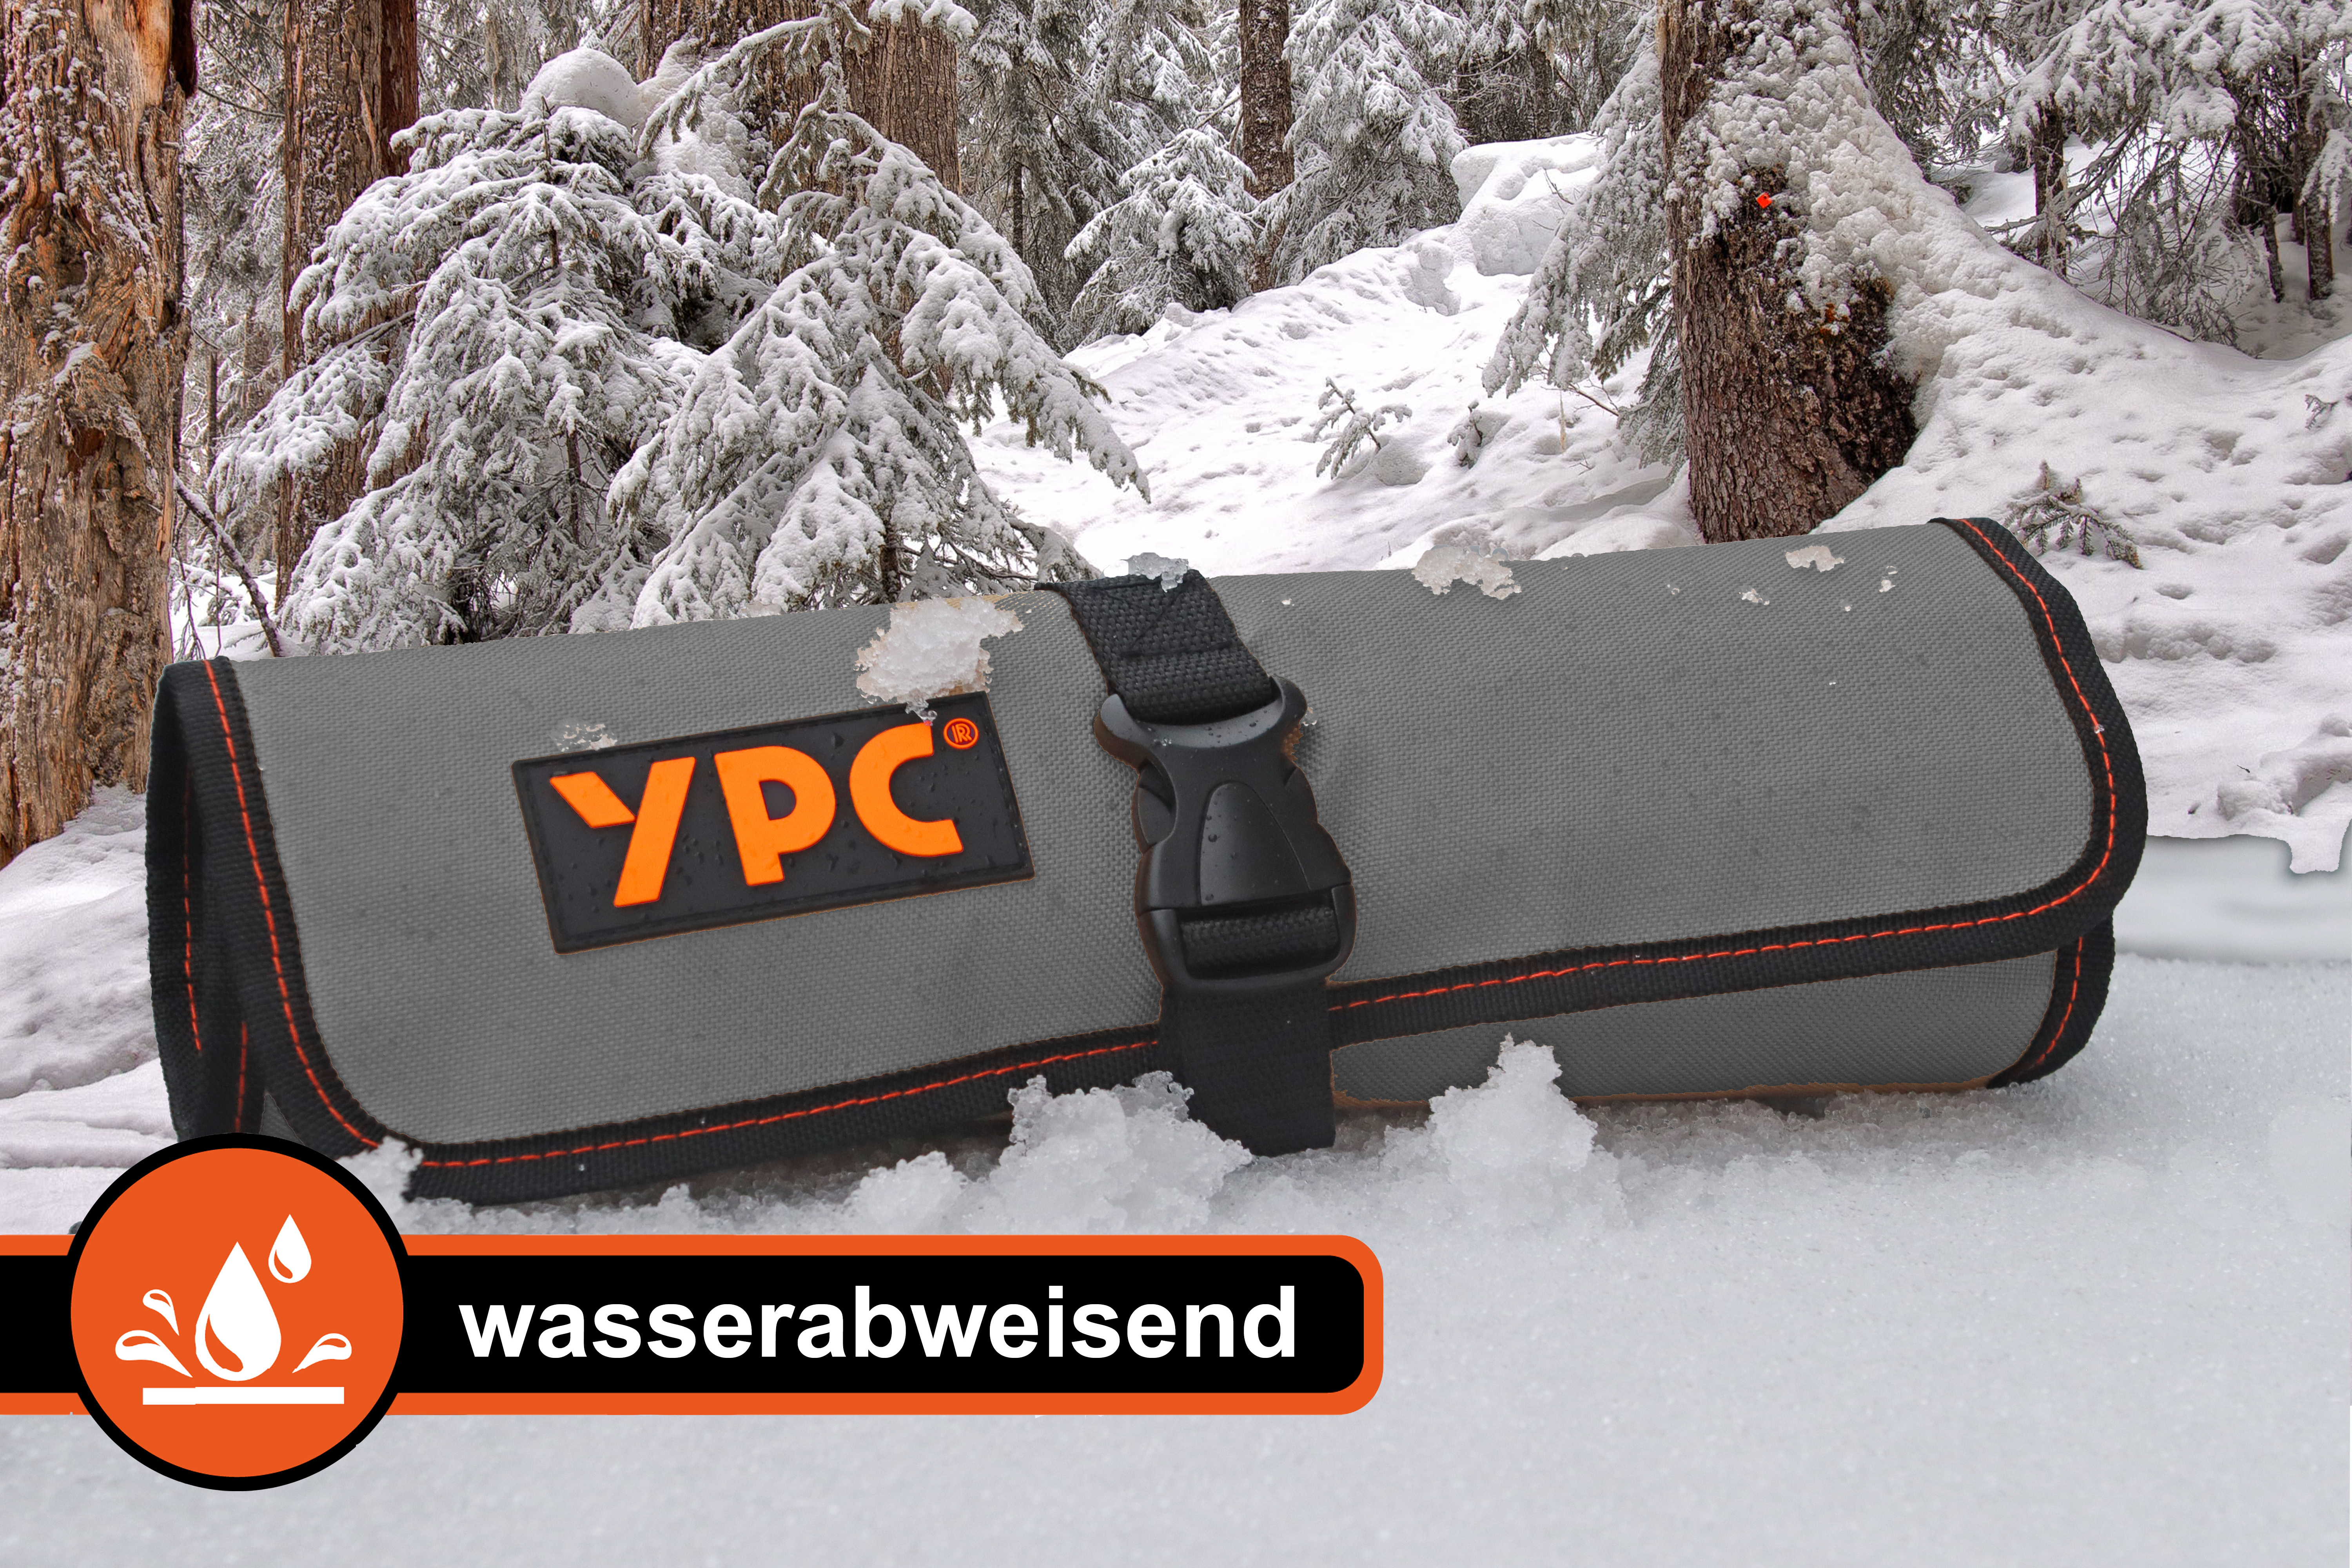 "VarioRoll L" Werkzeug Rolltasche 45x32cm, 10 Steckfächer und 4 Halteschlaufen, Grau-Schwarz